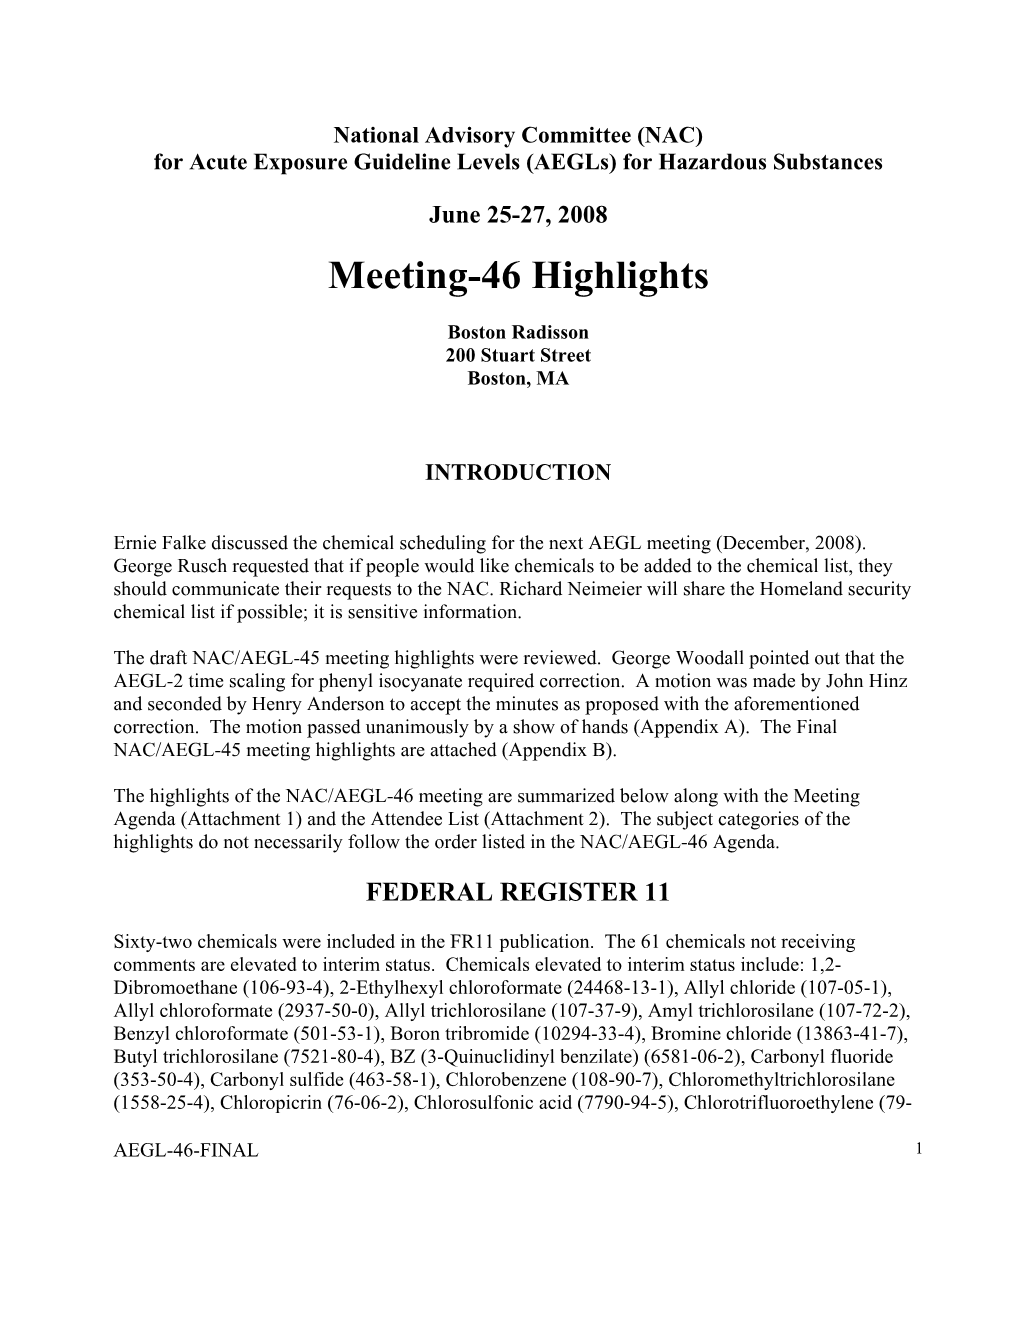 NAC/AEGL Committee Meeting Minutes, June 2008